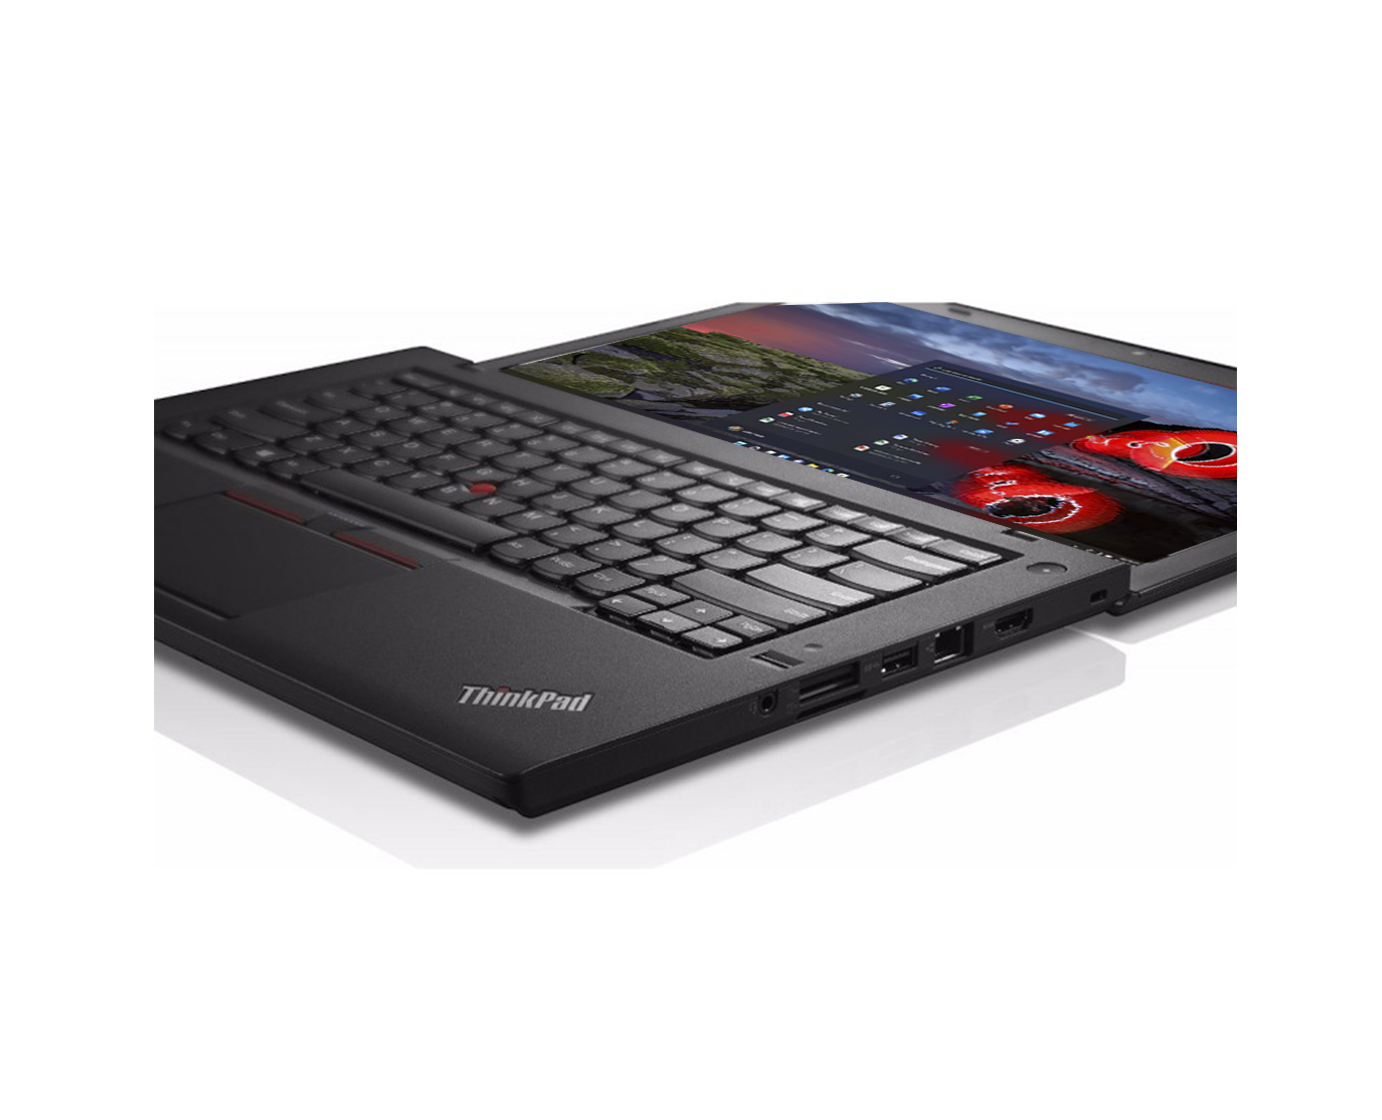 Lenovo Thinkpad T460 / Core I5 6300u 2,4ghz / 8Gb ram / 500Gb / 14" FullHD / Win 10 Pro ¡Liquidación!